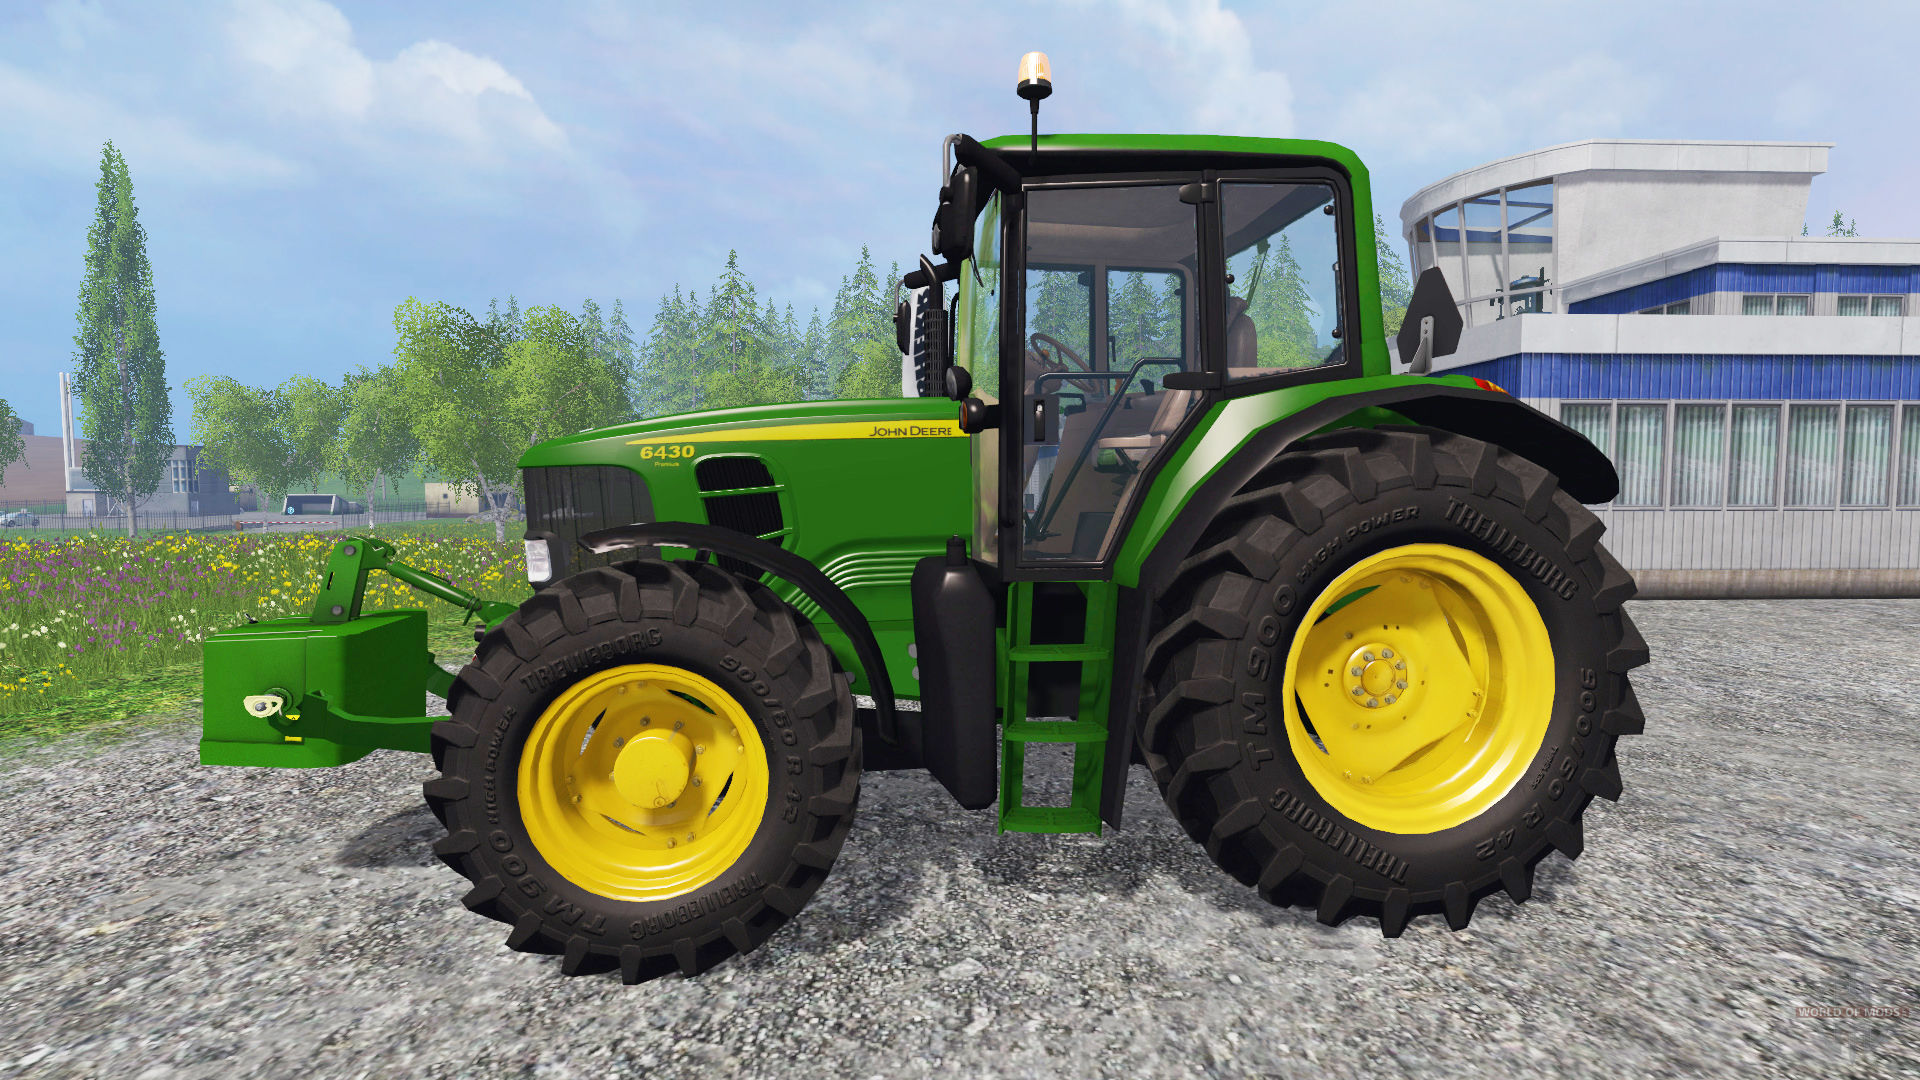 John Deere 6430 for Farming Simulator 2015